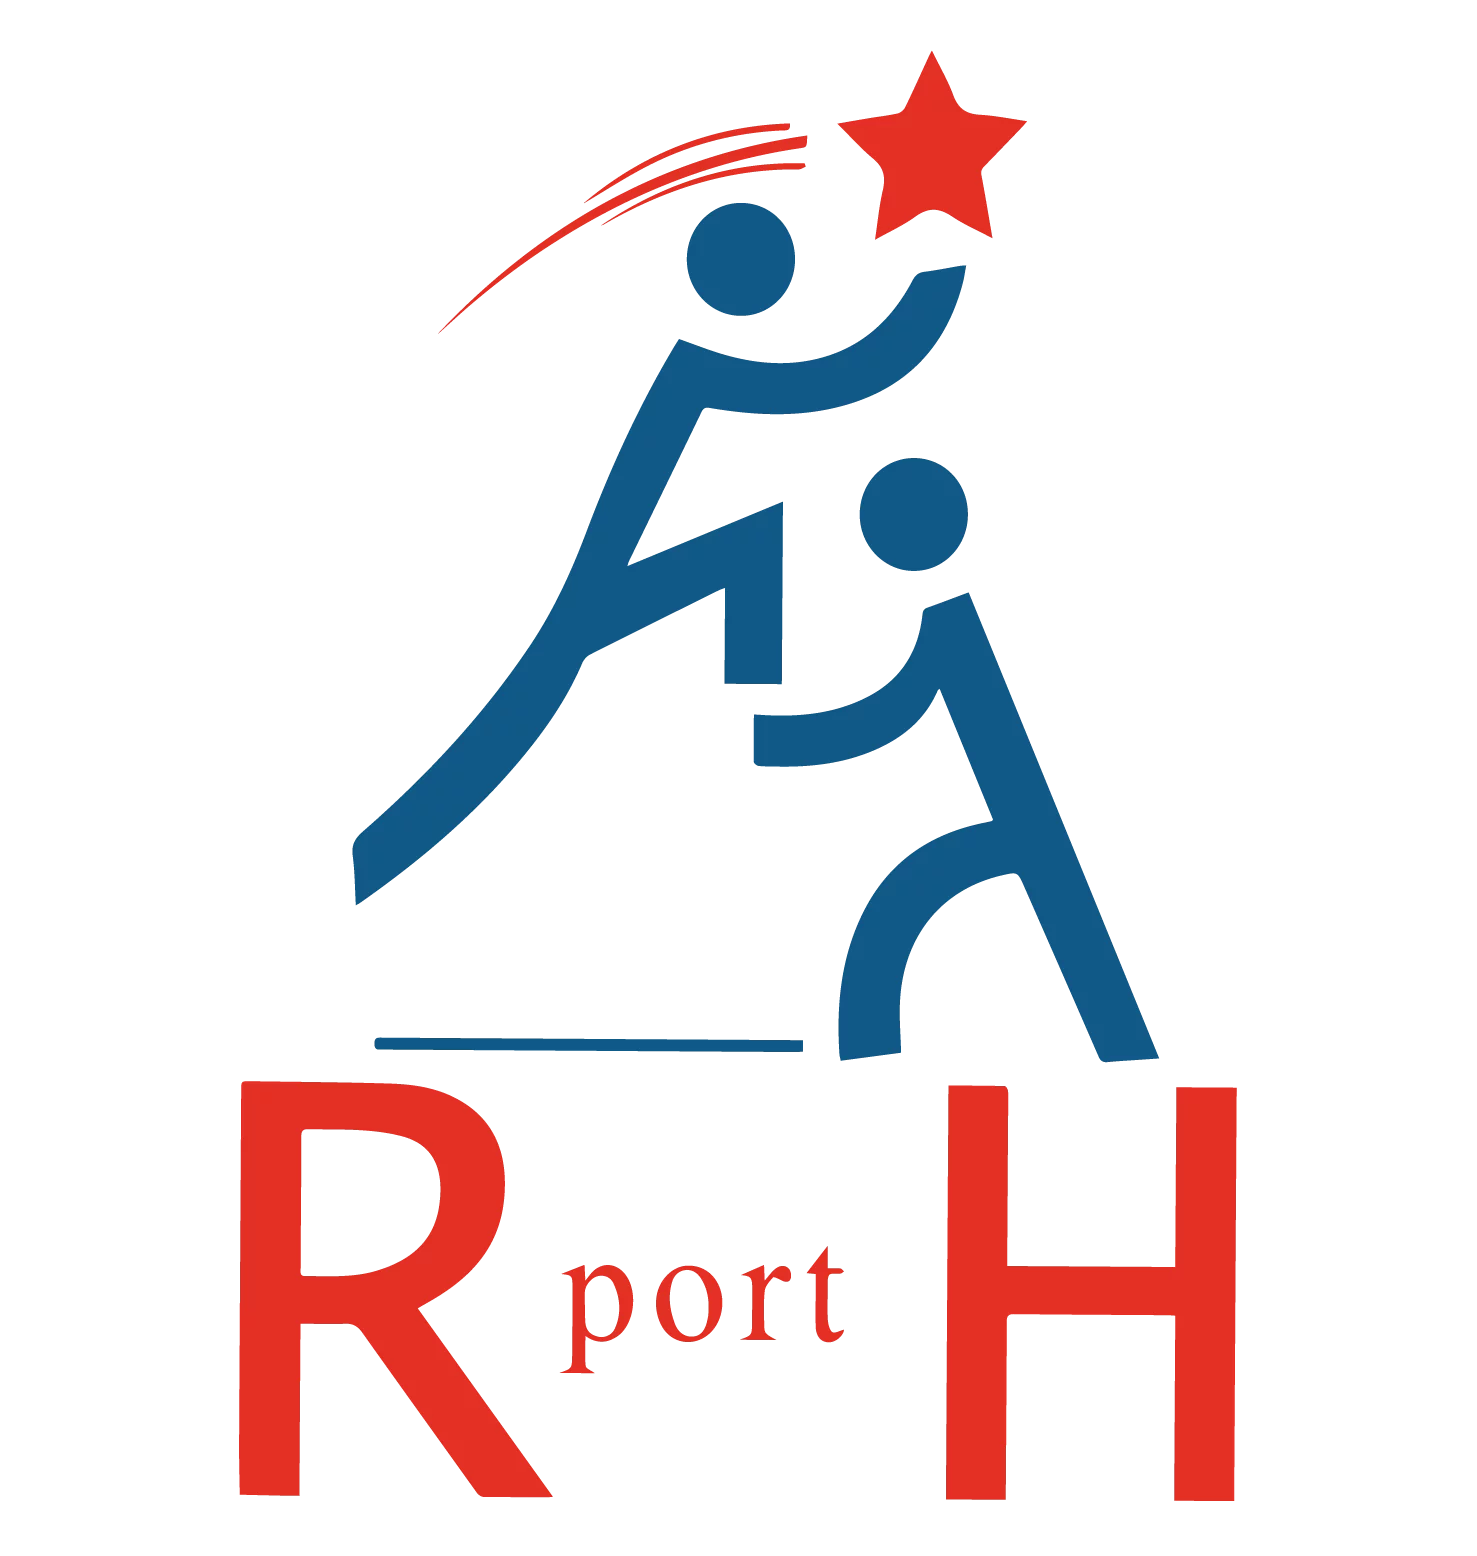 RPORTH recherche un ingénieur des opérations, Dakar, Sénégal